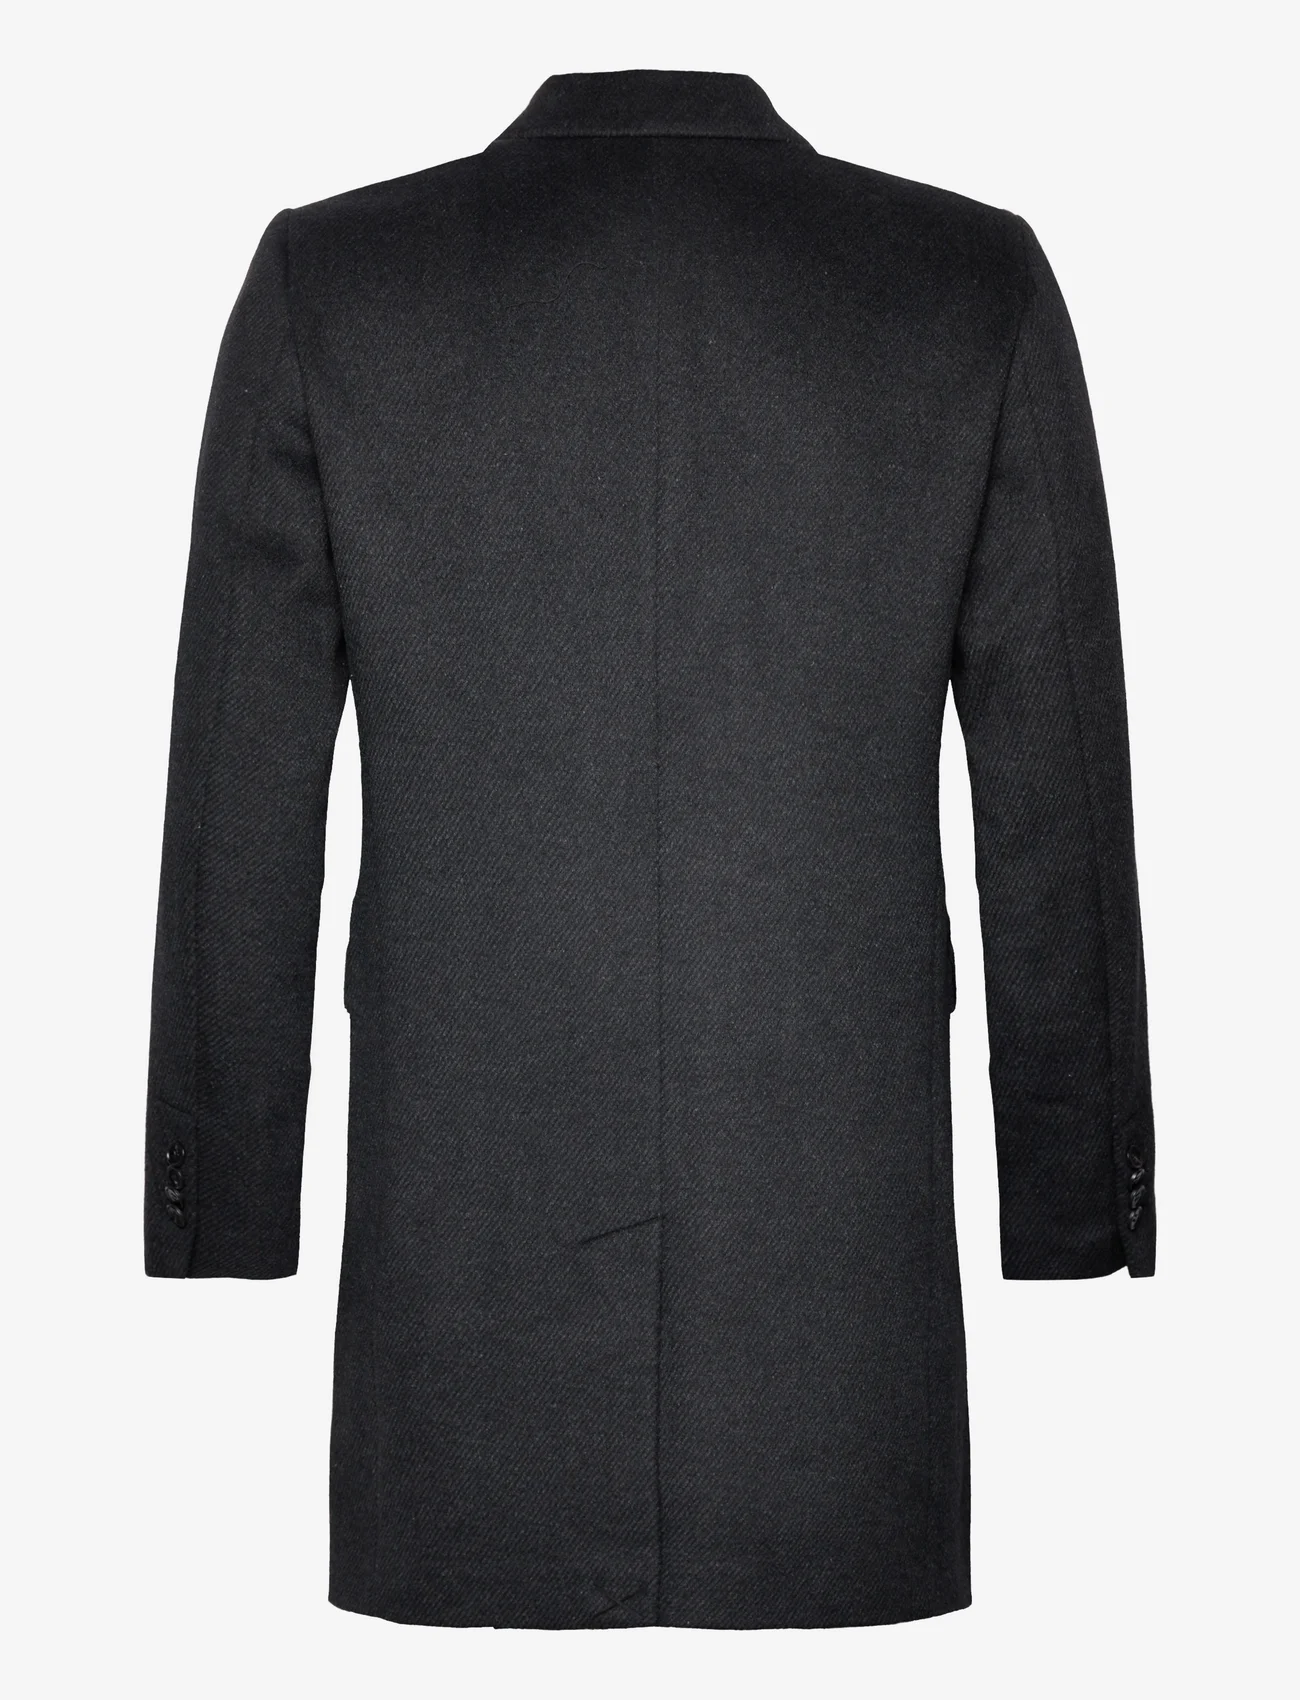 Bruuns Bazaar - FuzzyBBDoubalina coat - kurtki zimowe - black melange - 1